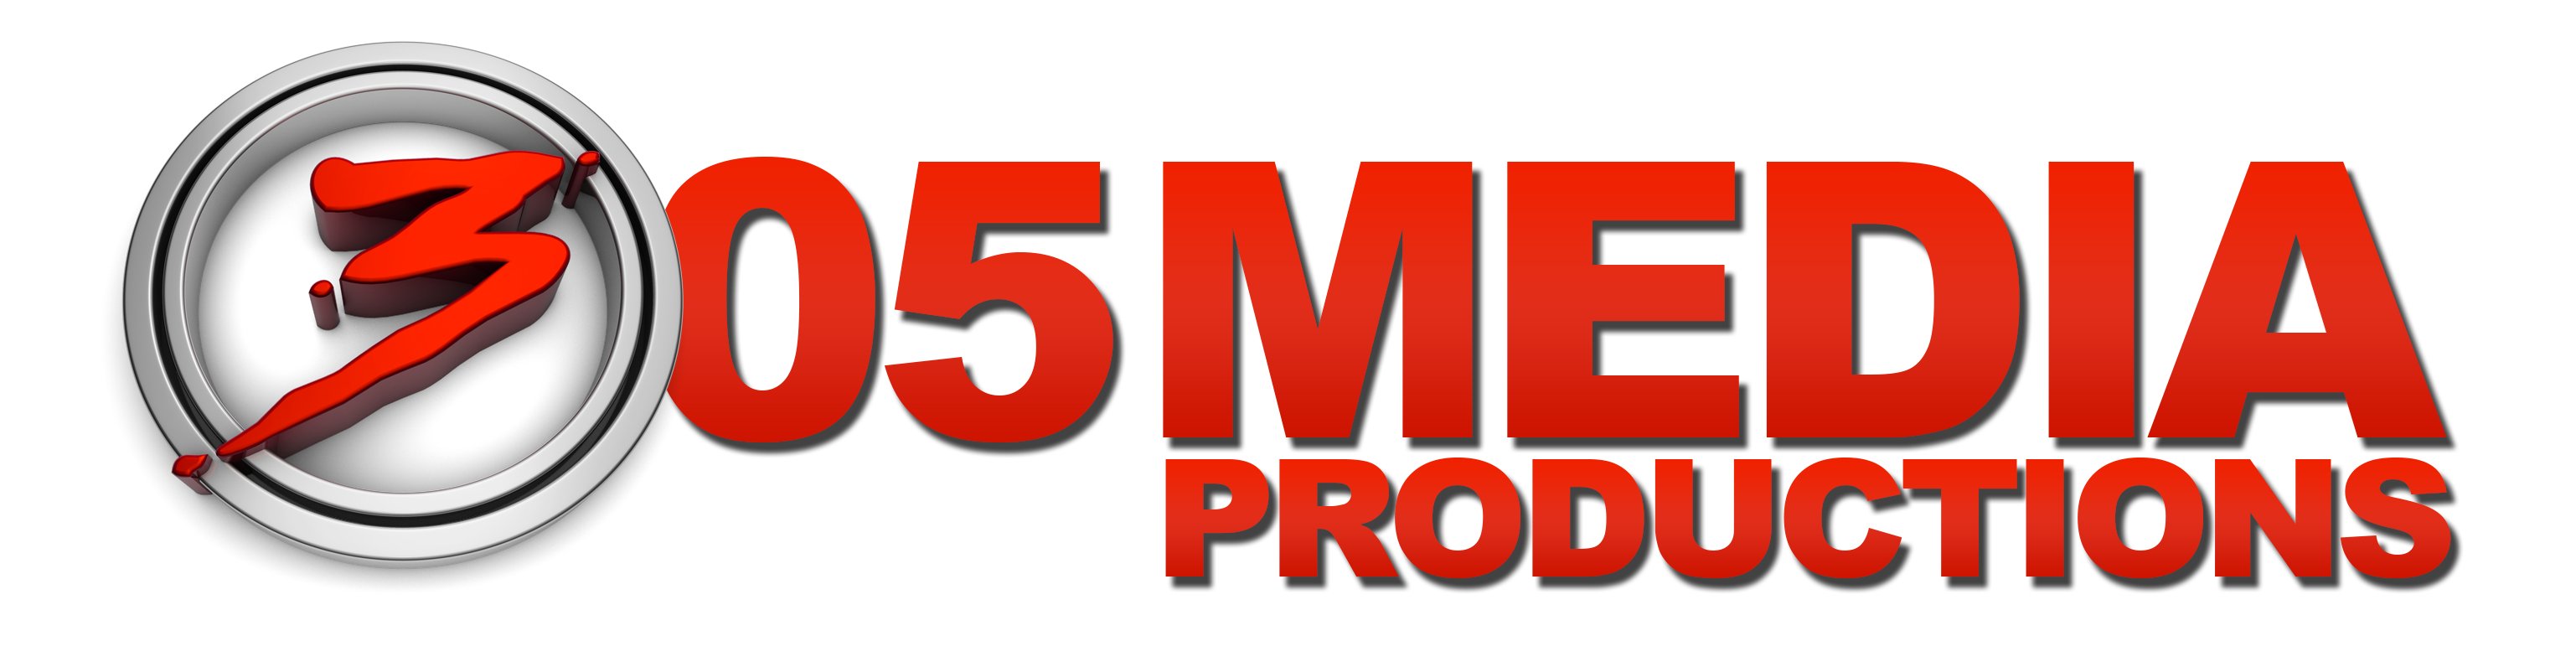 305 Media Production Logo